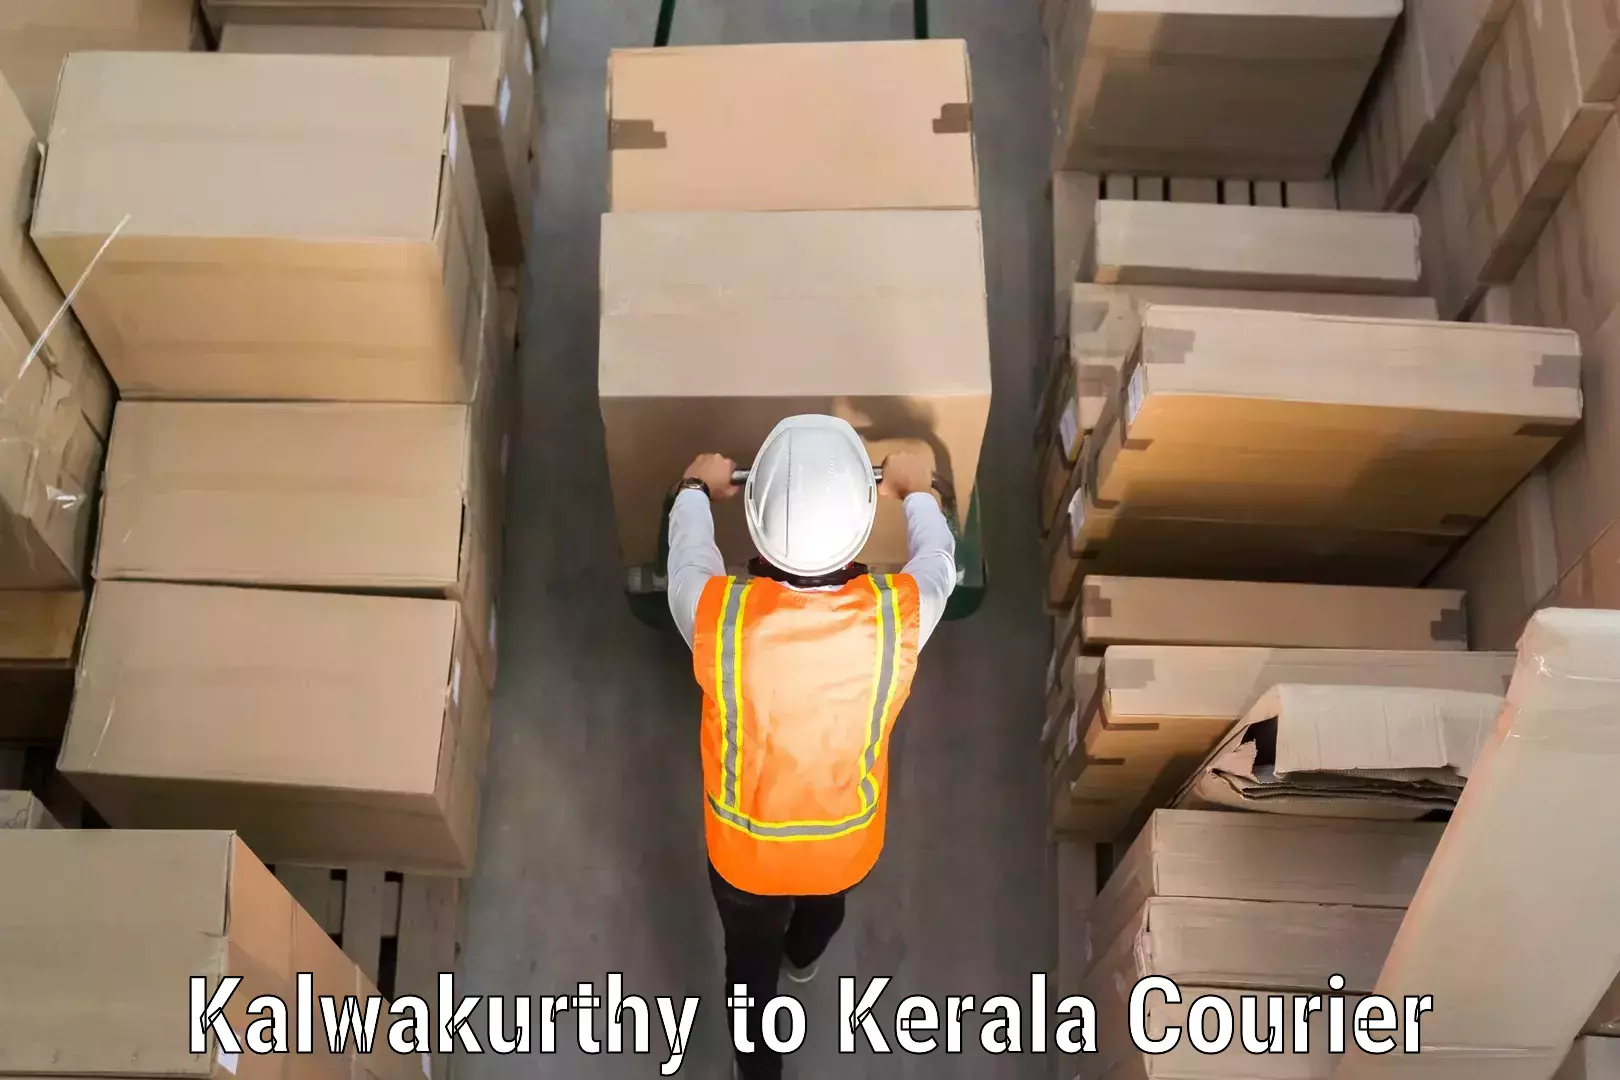 Baggage transport coordination Kalwakurthy to Kerala